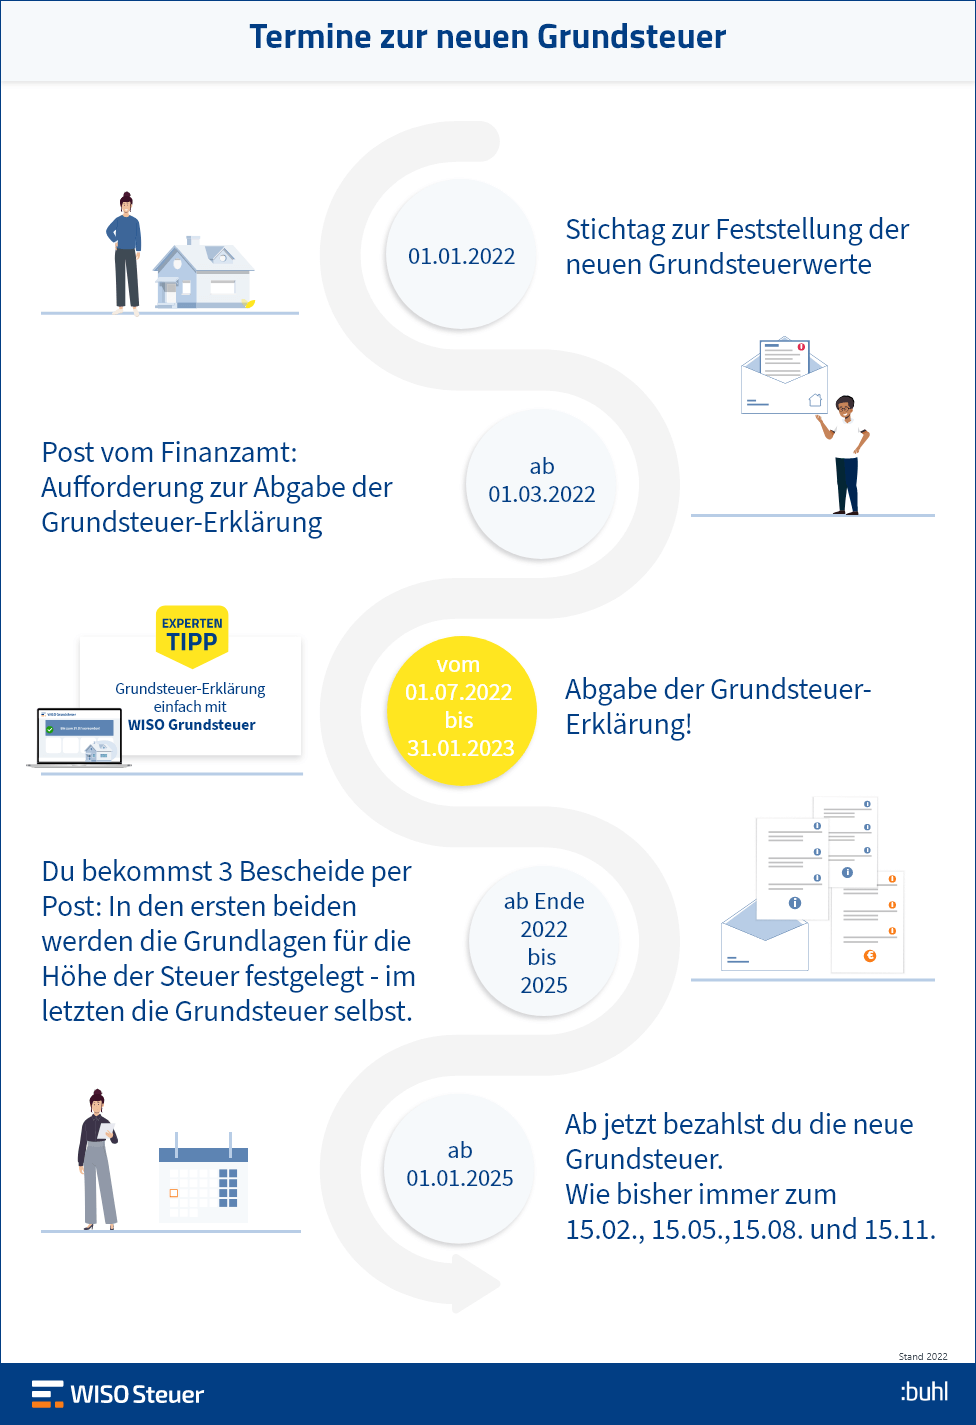 Grundsteuer-Erklärung Fristen Termine Infografik